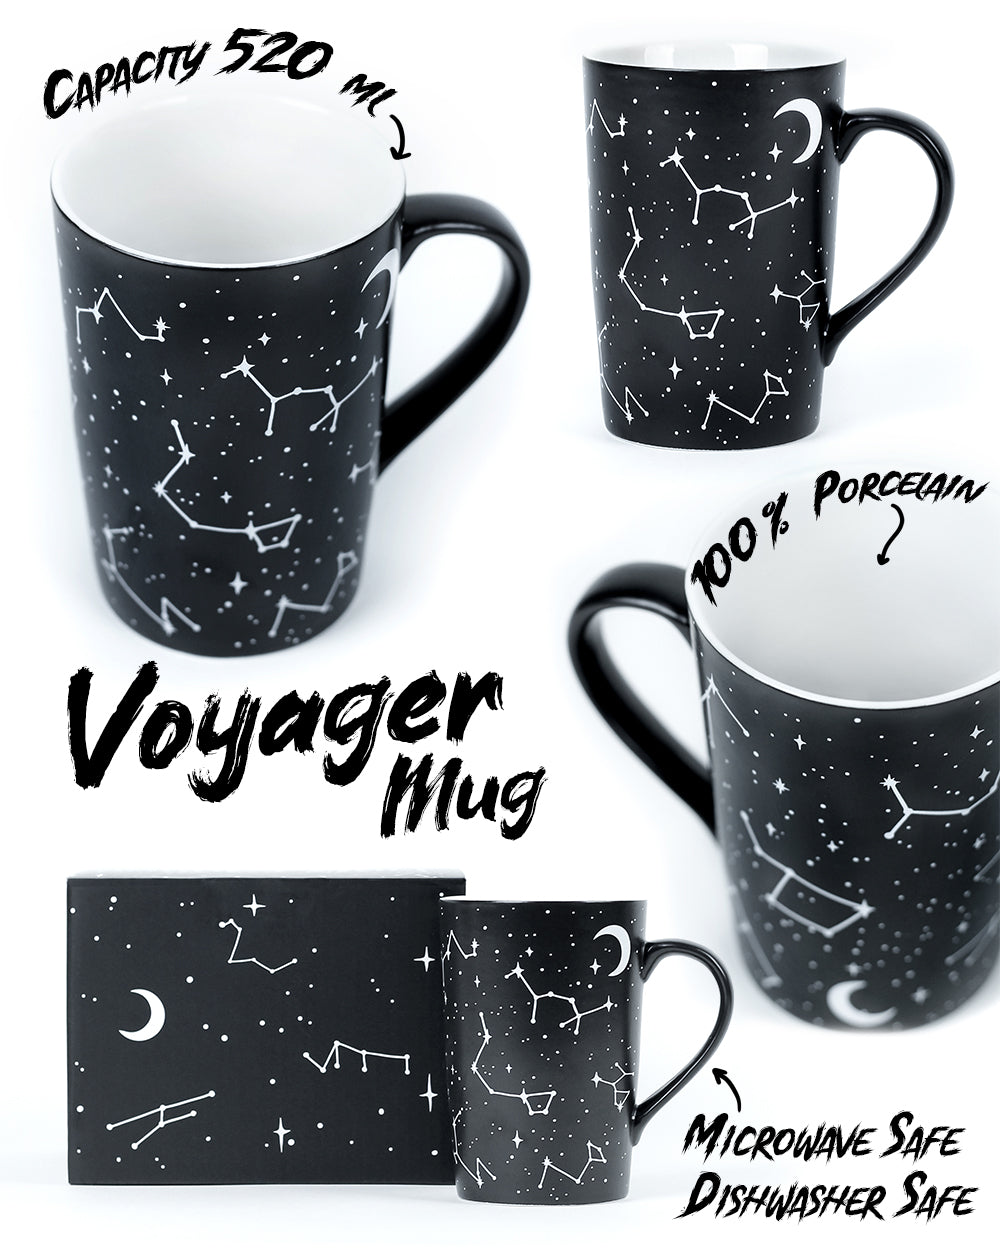 Voyager Mug – Rogue + Wolf